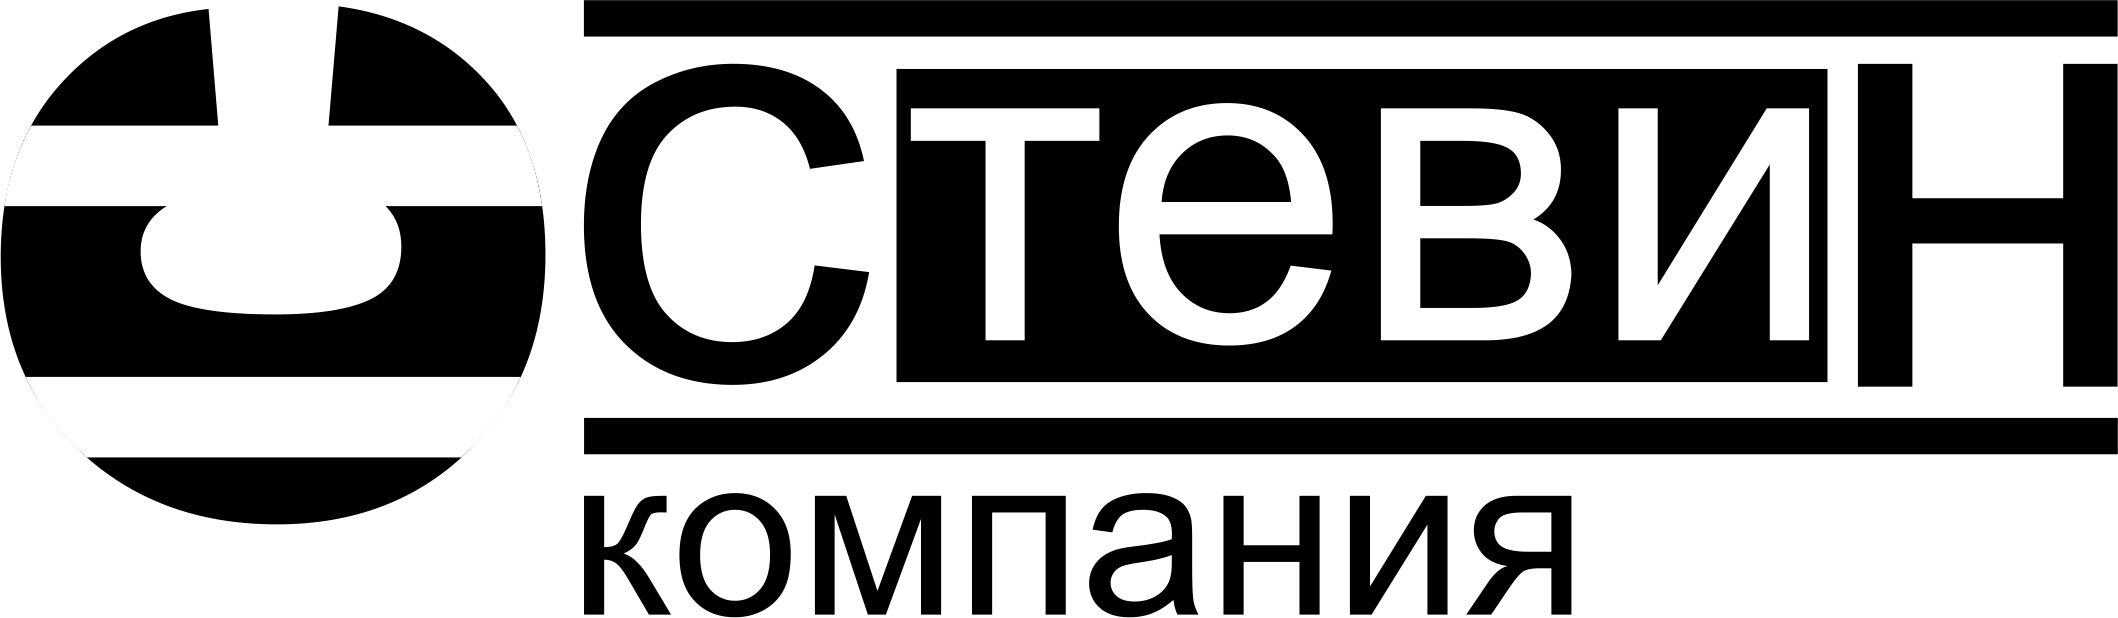 Логотип компании стевин